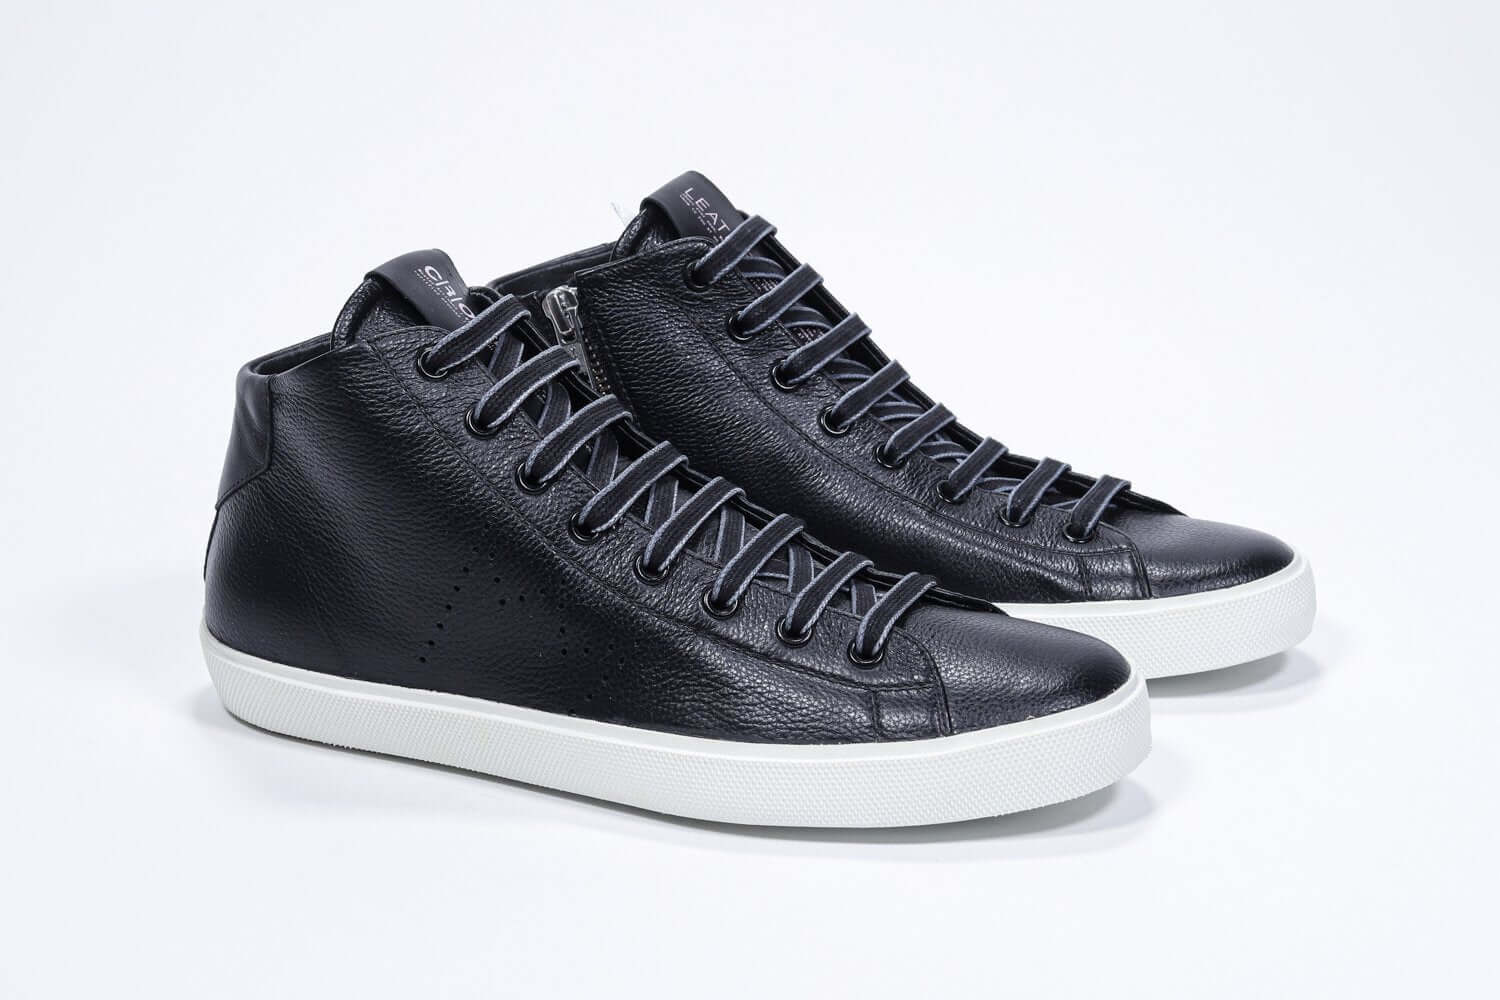 Vue de trois quarts de l'avant de la chaussure de sport noire sneaker avec une tige en cuir avec un logo perforé, une fermeture éclair interne et une semelle blanche.